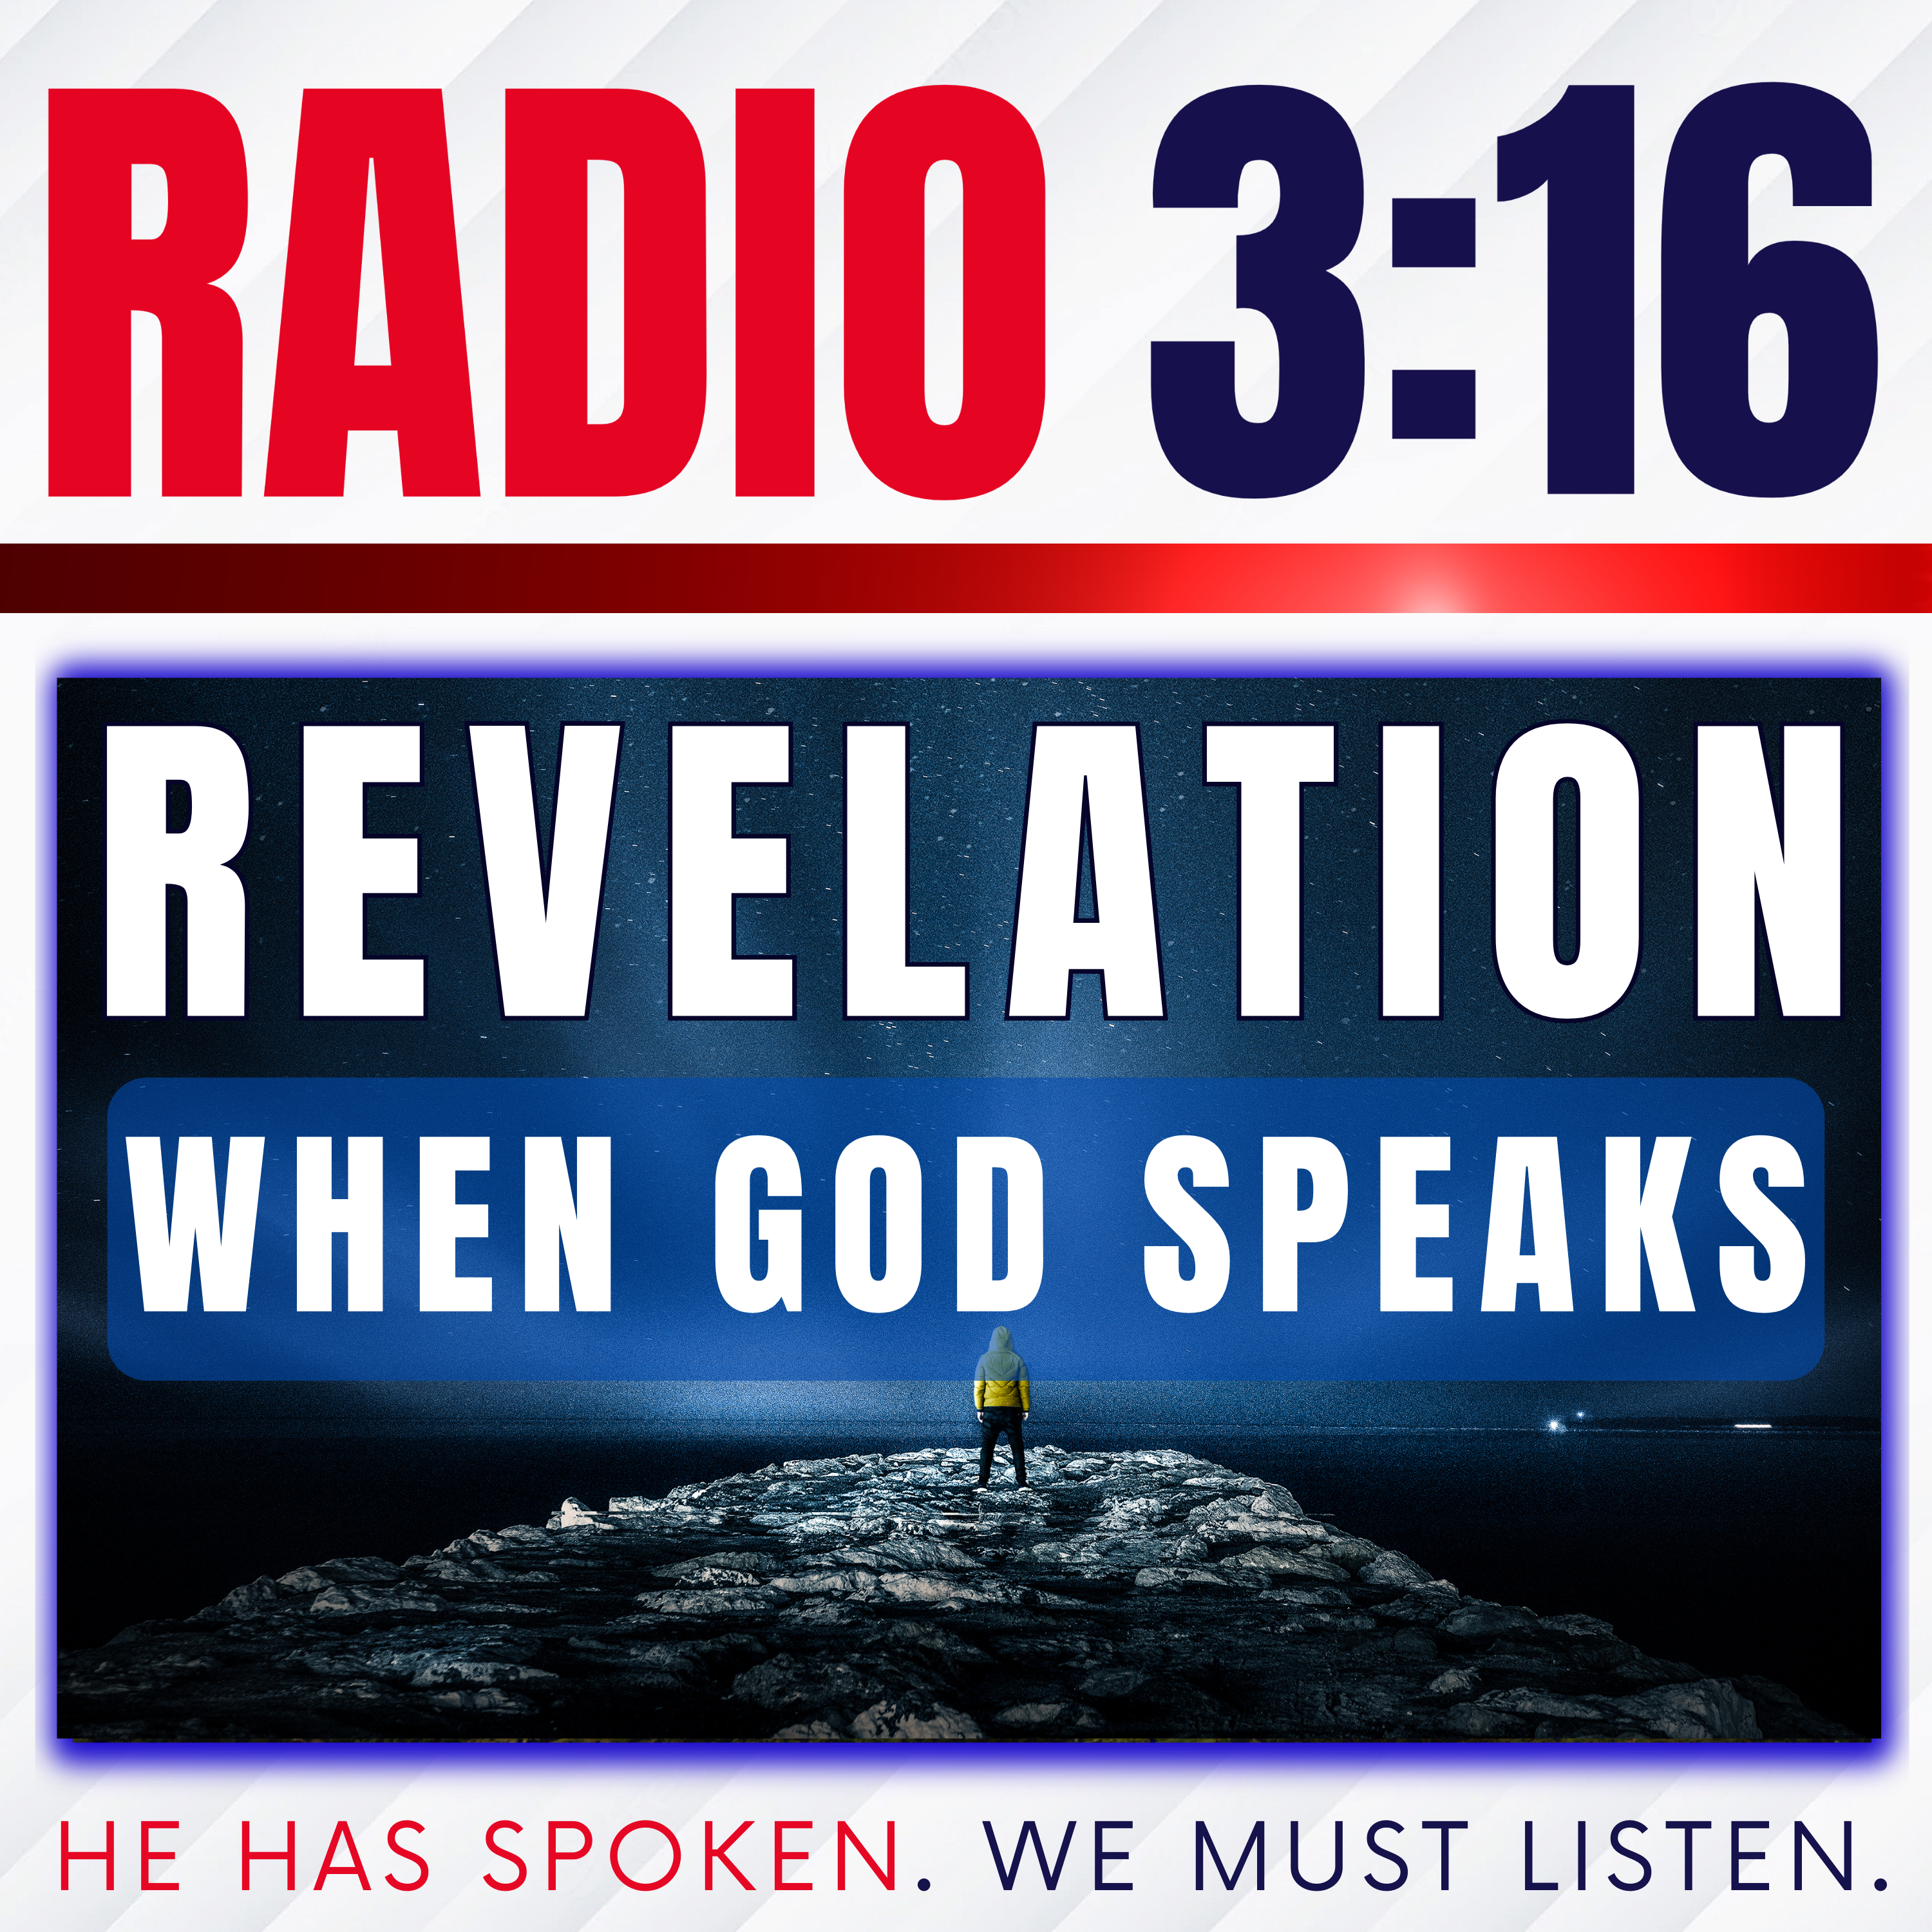 Revelation: When God Speaks